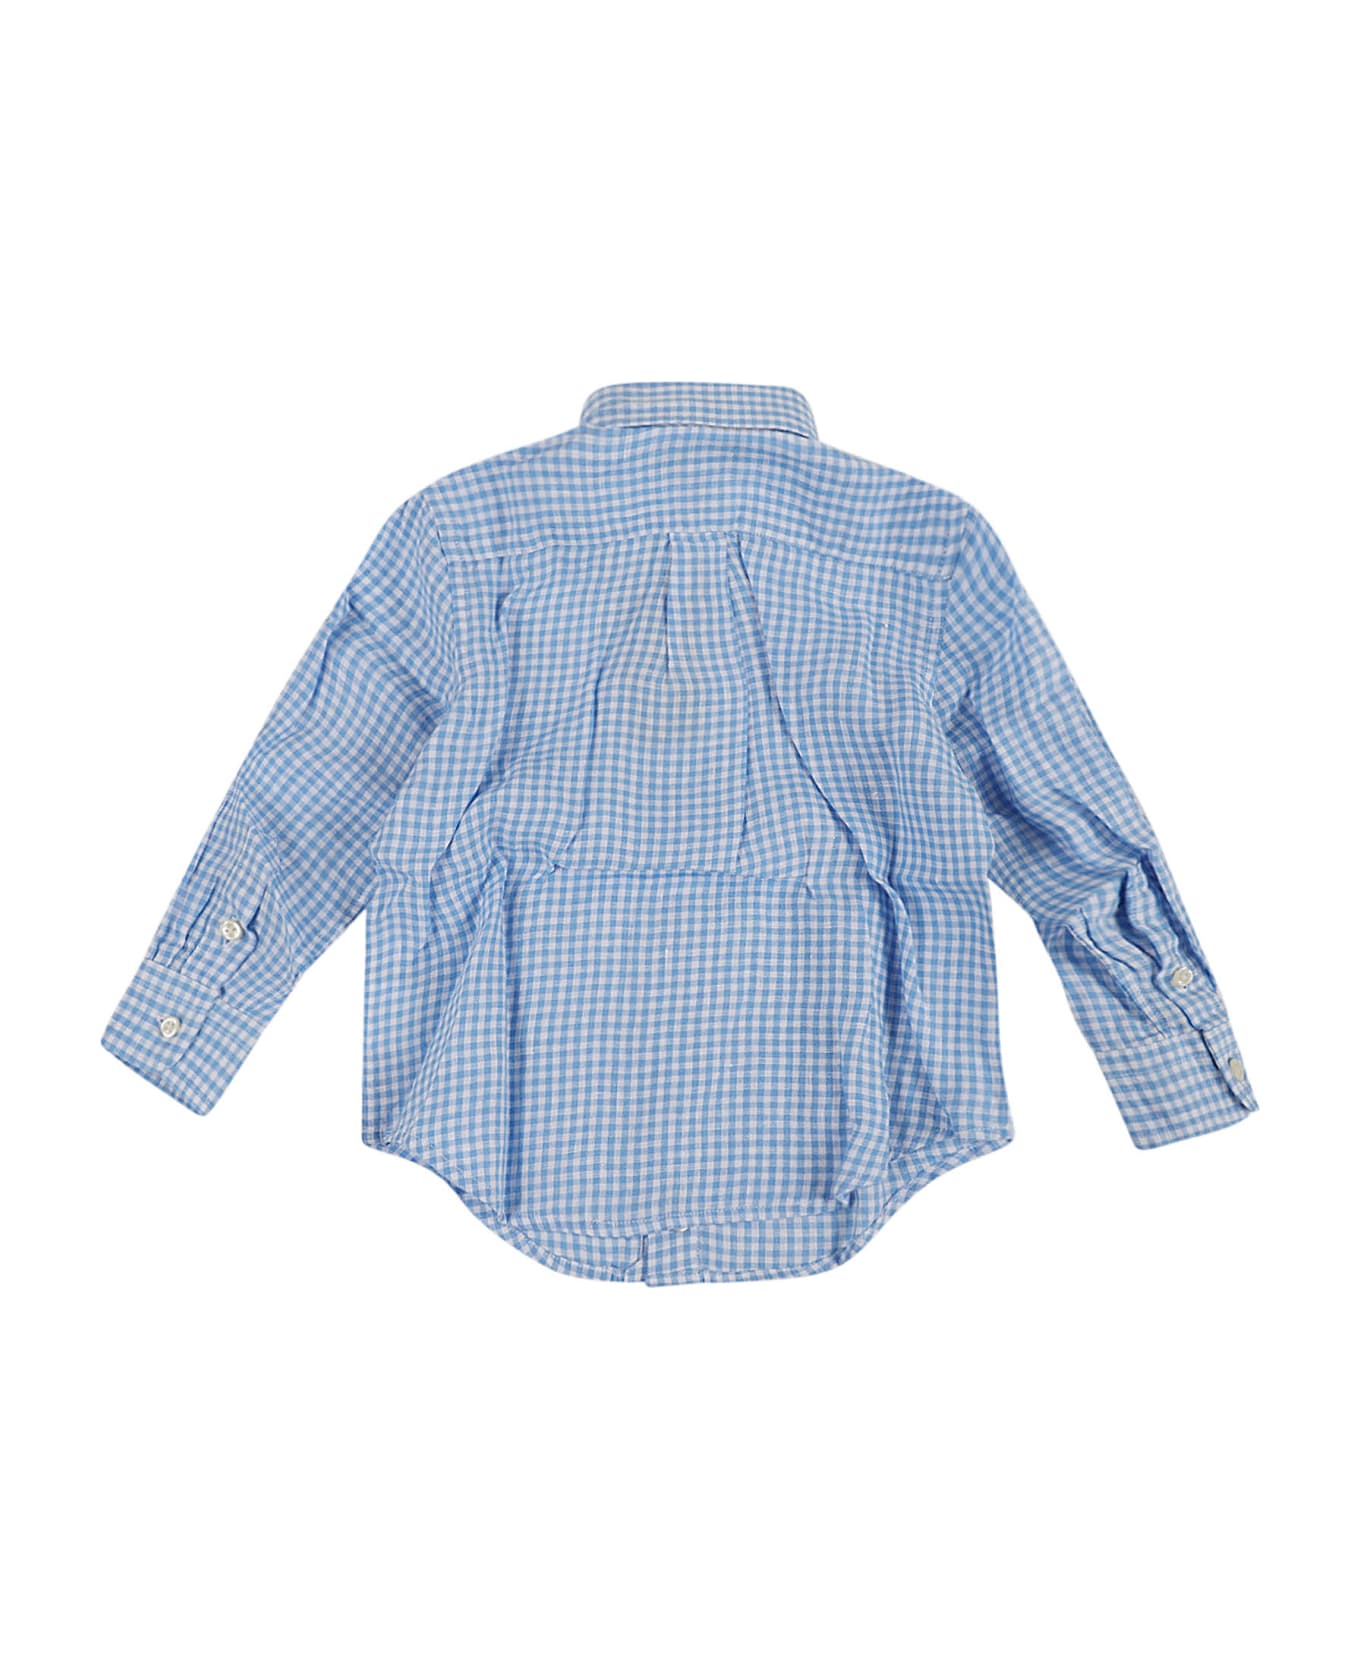 Ralph Lauren Clbdppc-shirts-sport Shirt - B Blue White